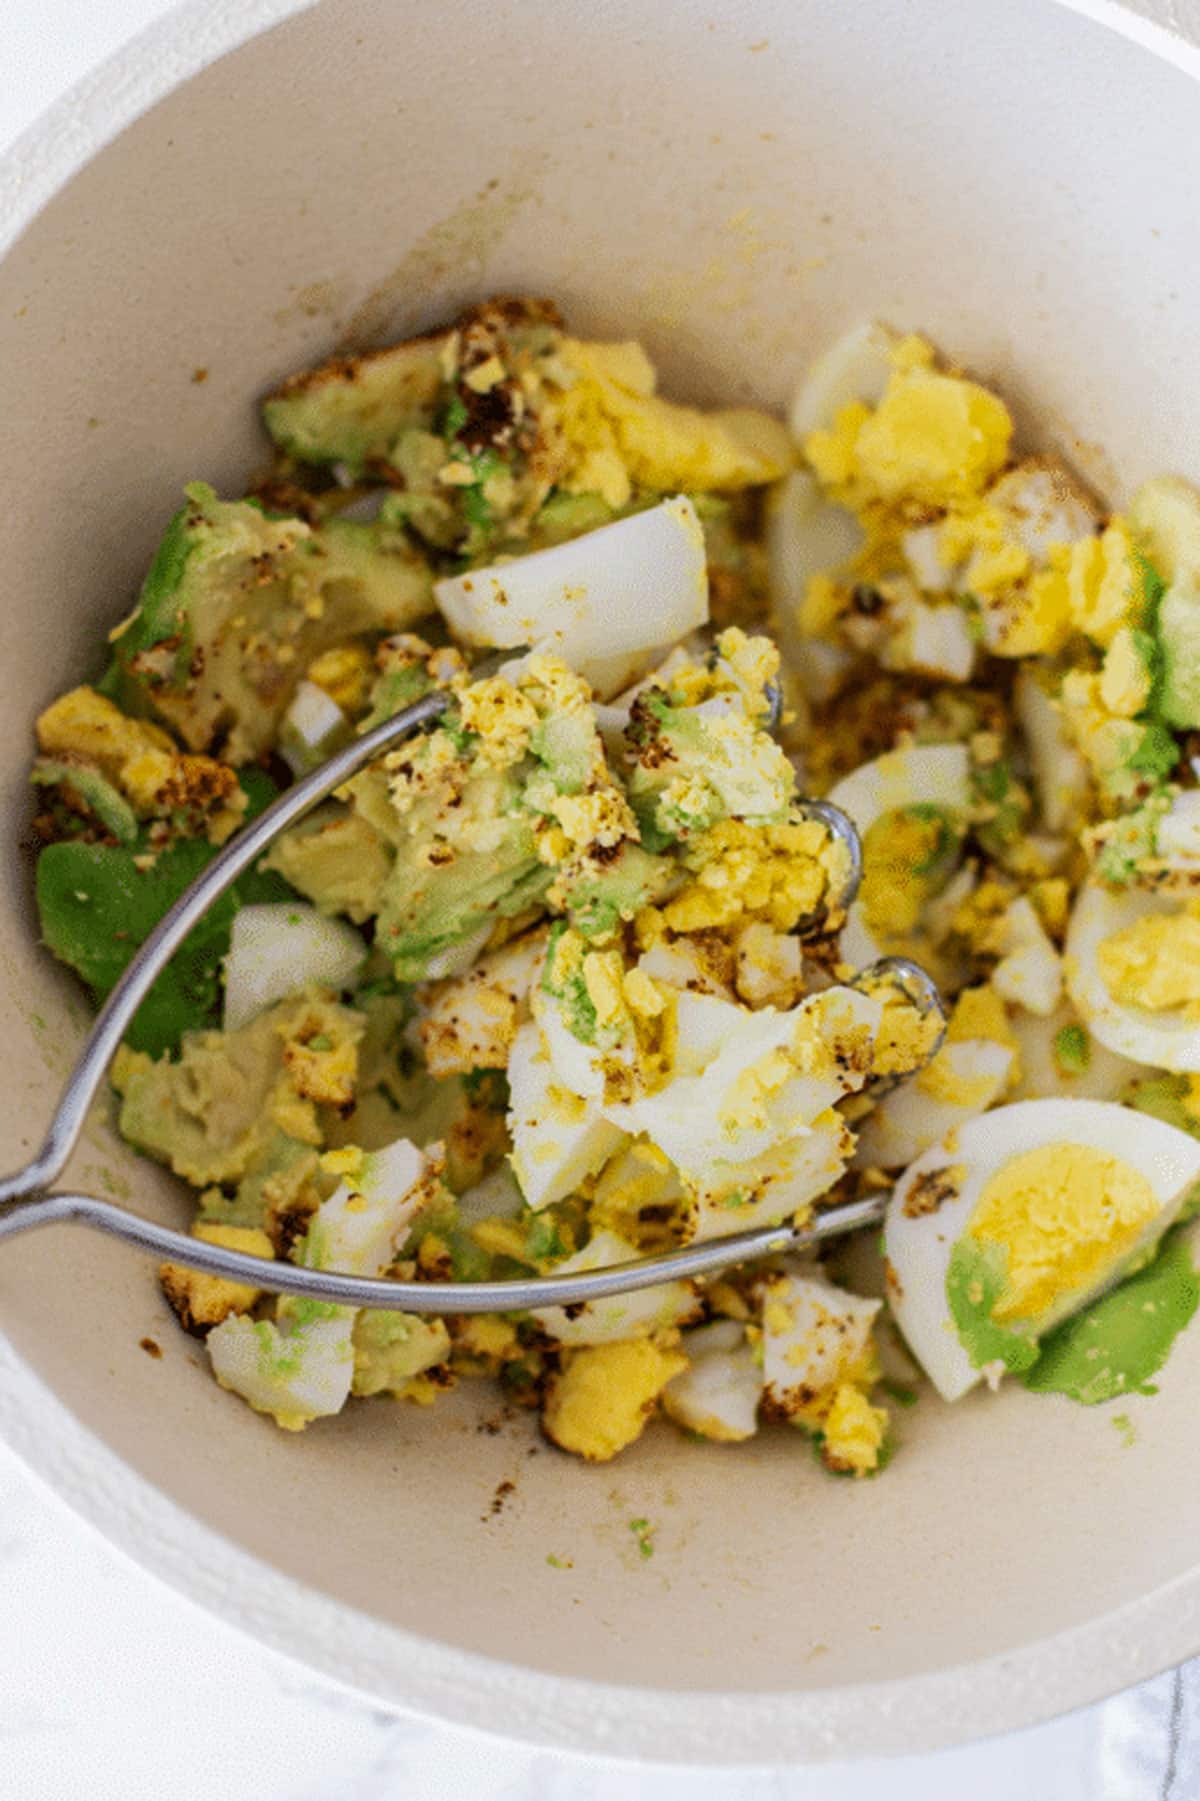 Mashed eggs, avocado and spices to make Avocado Egg Salad.